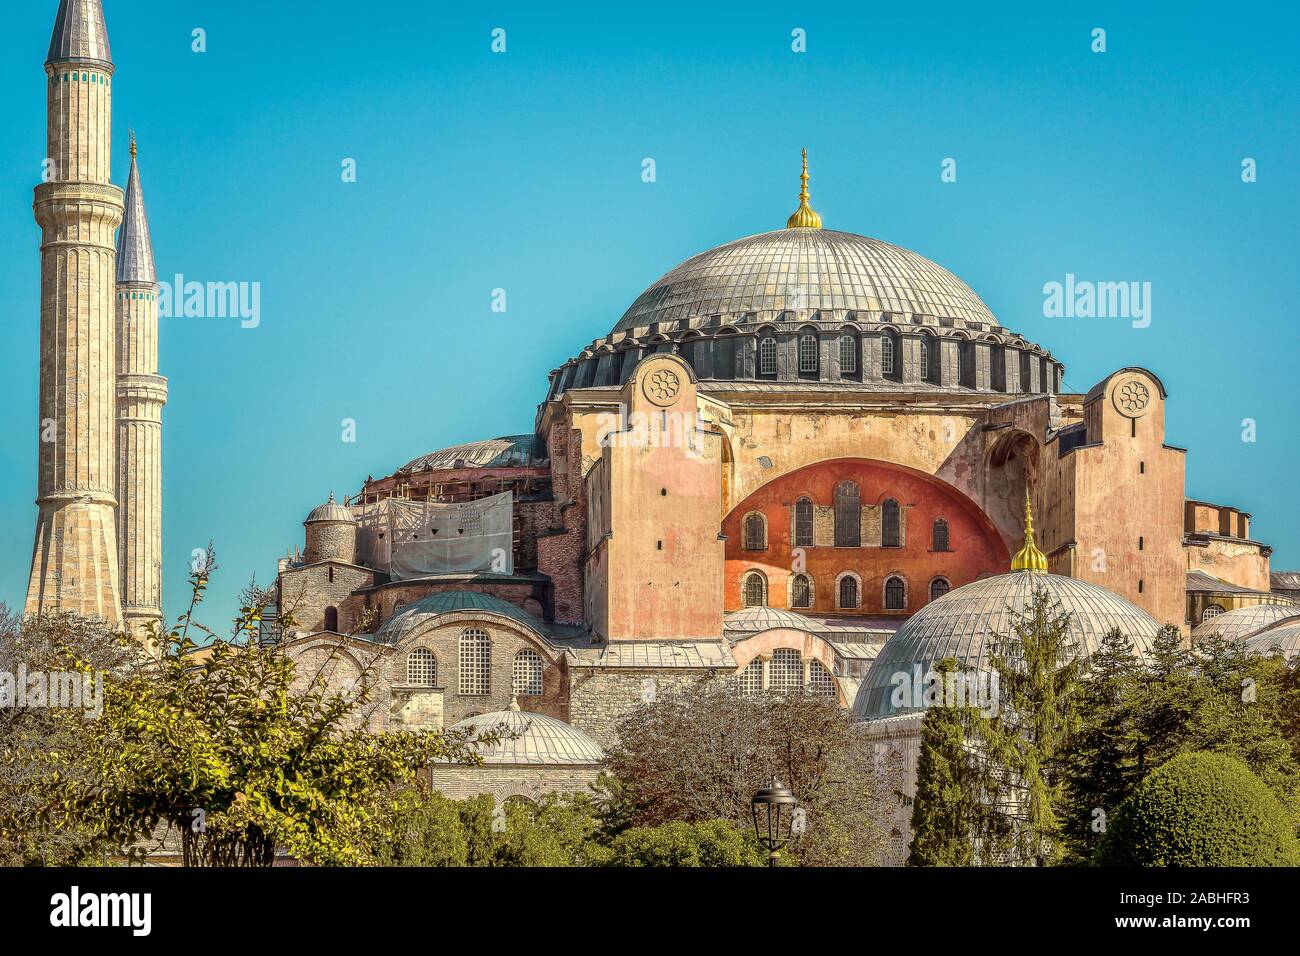 Die Fassade der Hagia Sophia mit zwei Minaretten und seinen riesigen Kuppel gegen den blauen Himmel. Die Hagia Sophia war ein byzantinischen Kathedrale und osmanische Moschee gebaut Stockfoto